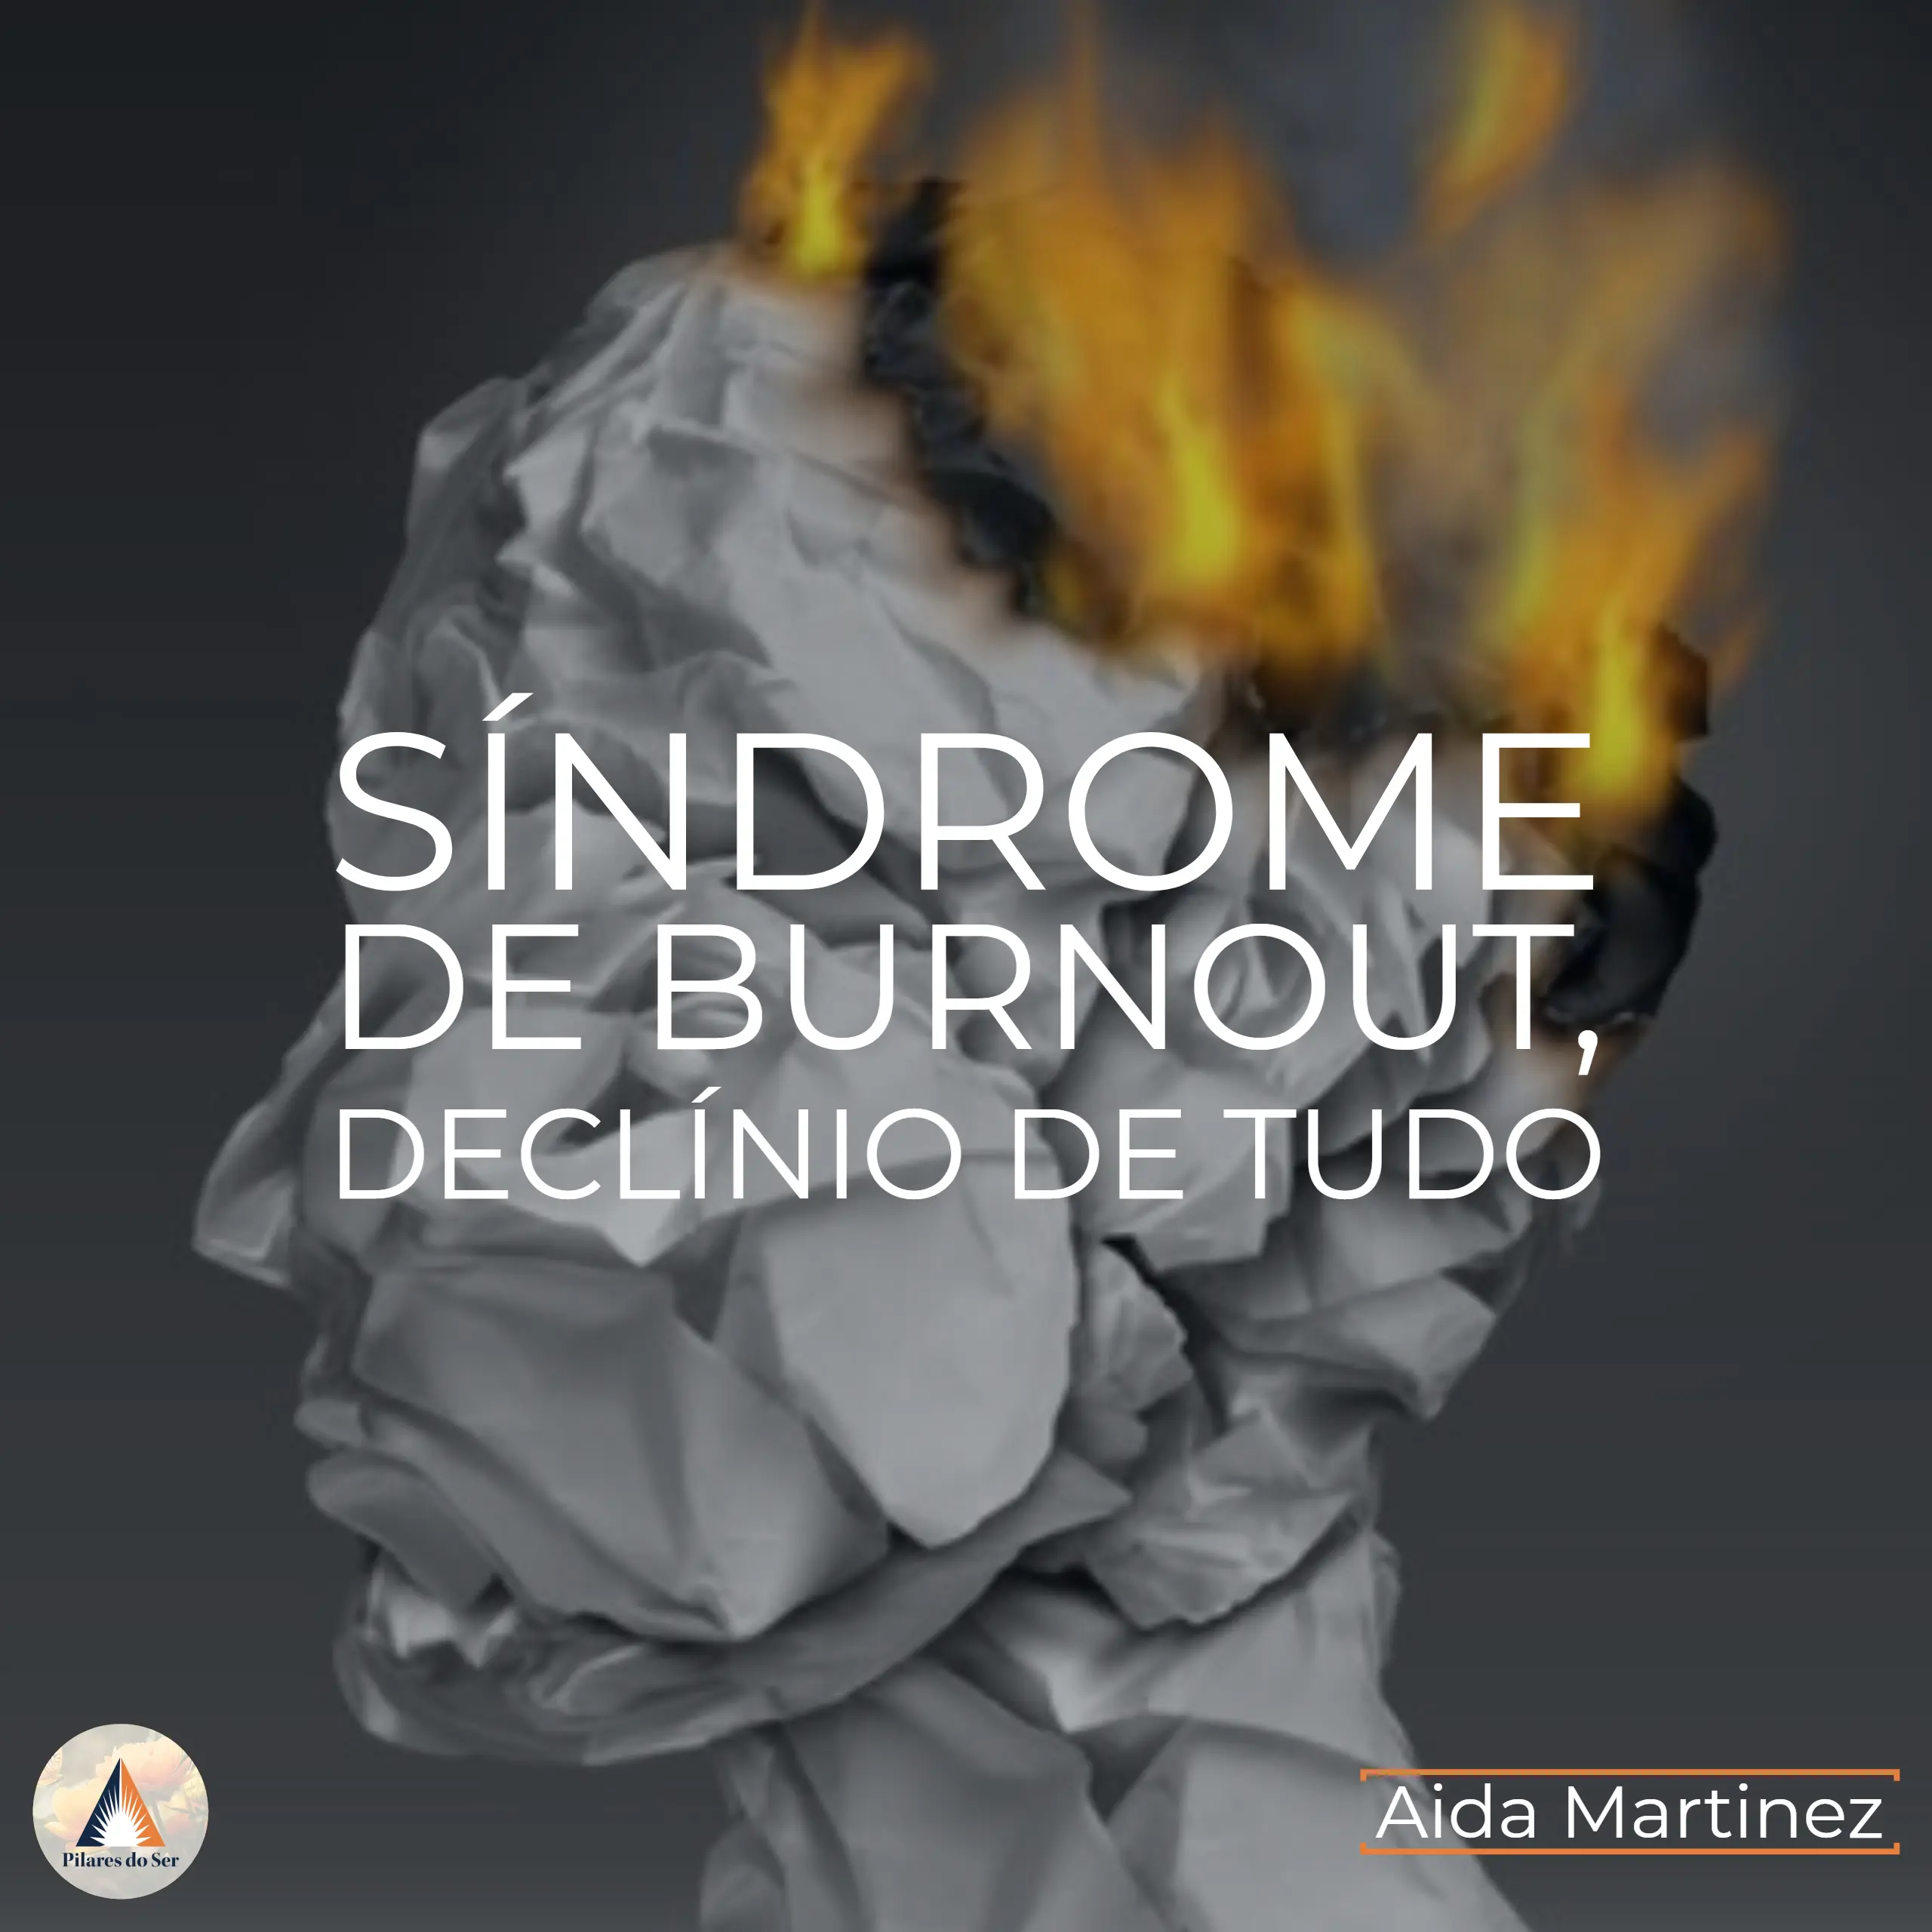 Síndrome de Burnout, o declínio de tudo